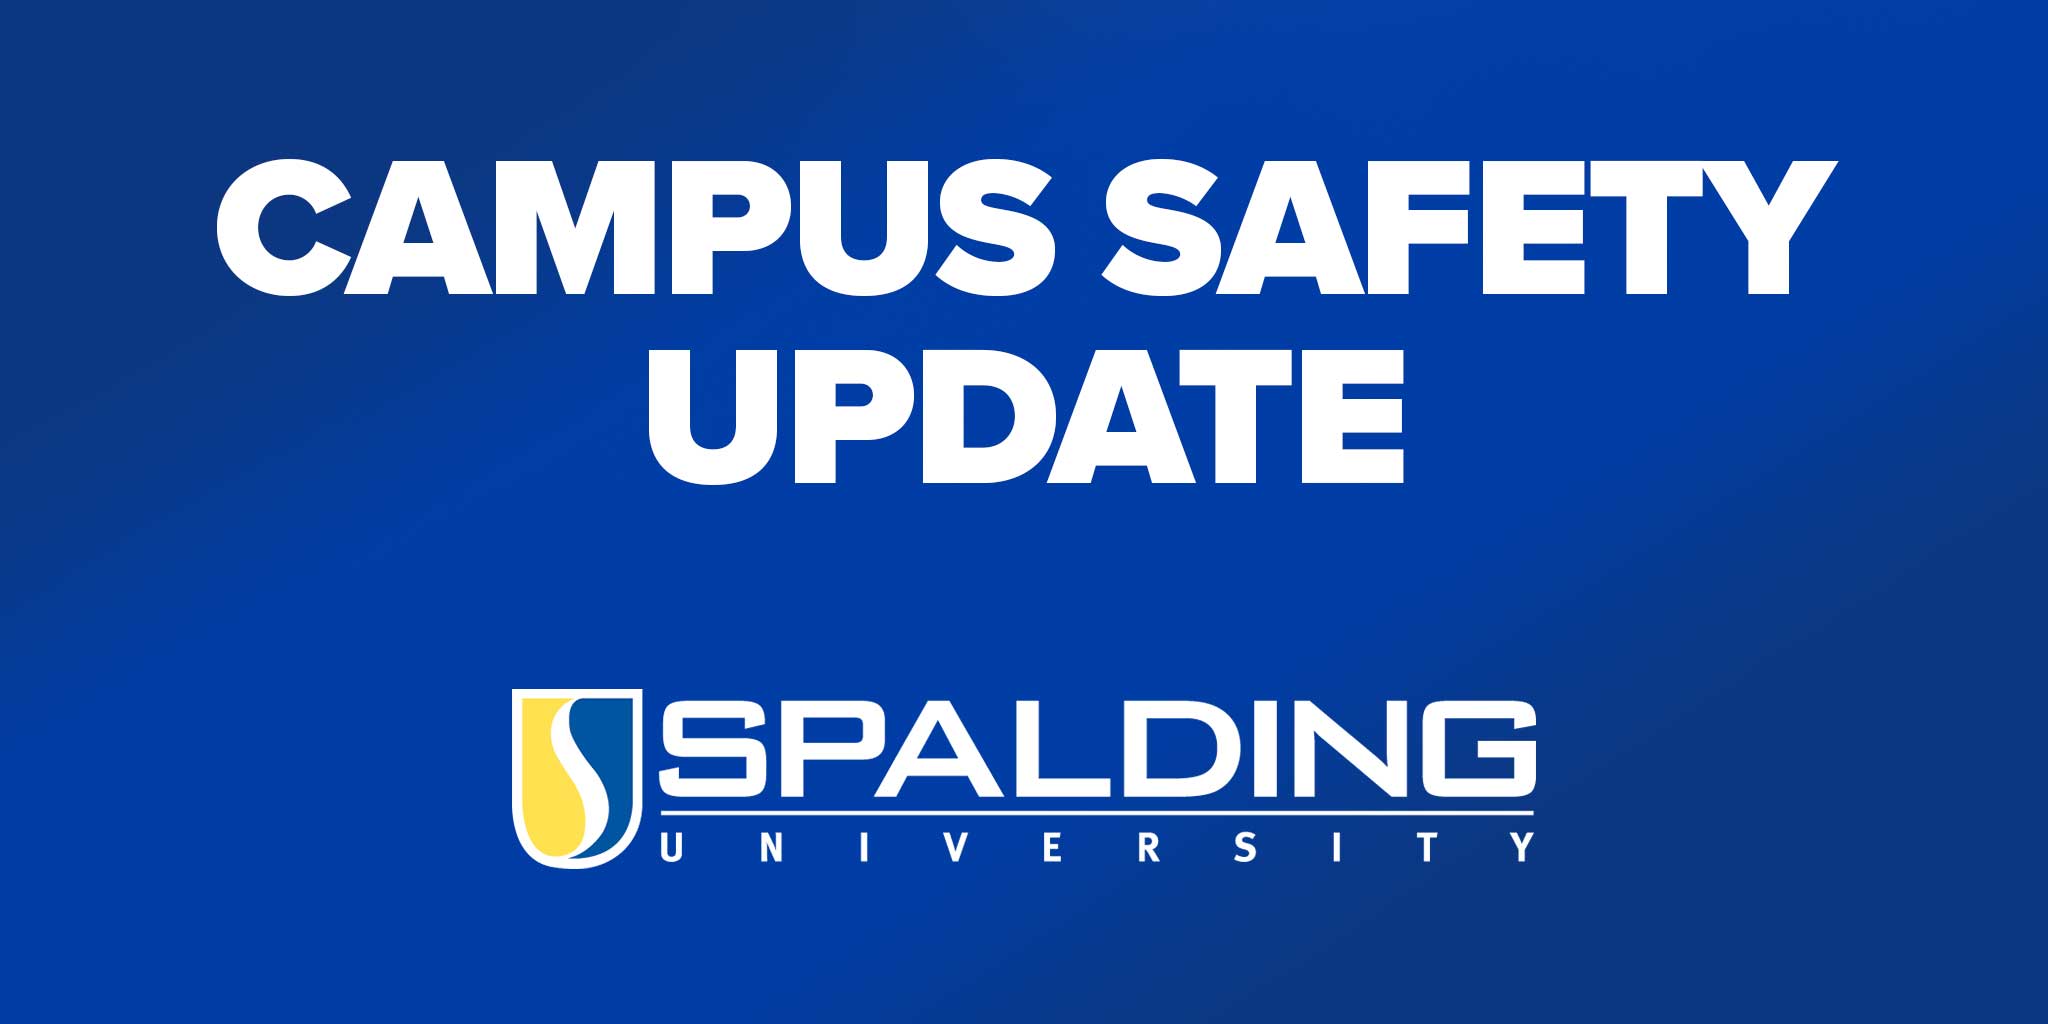 Spalding "Campus Safety Update" graphic